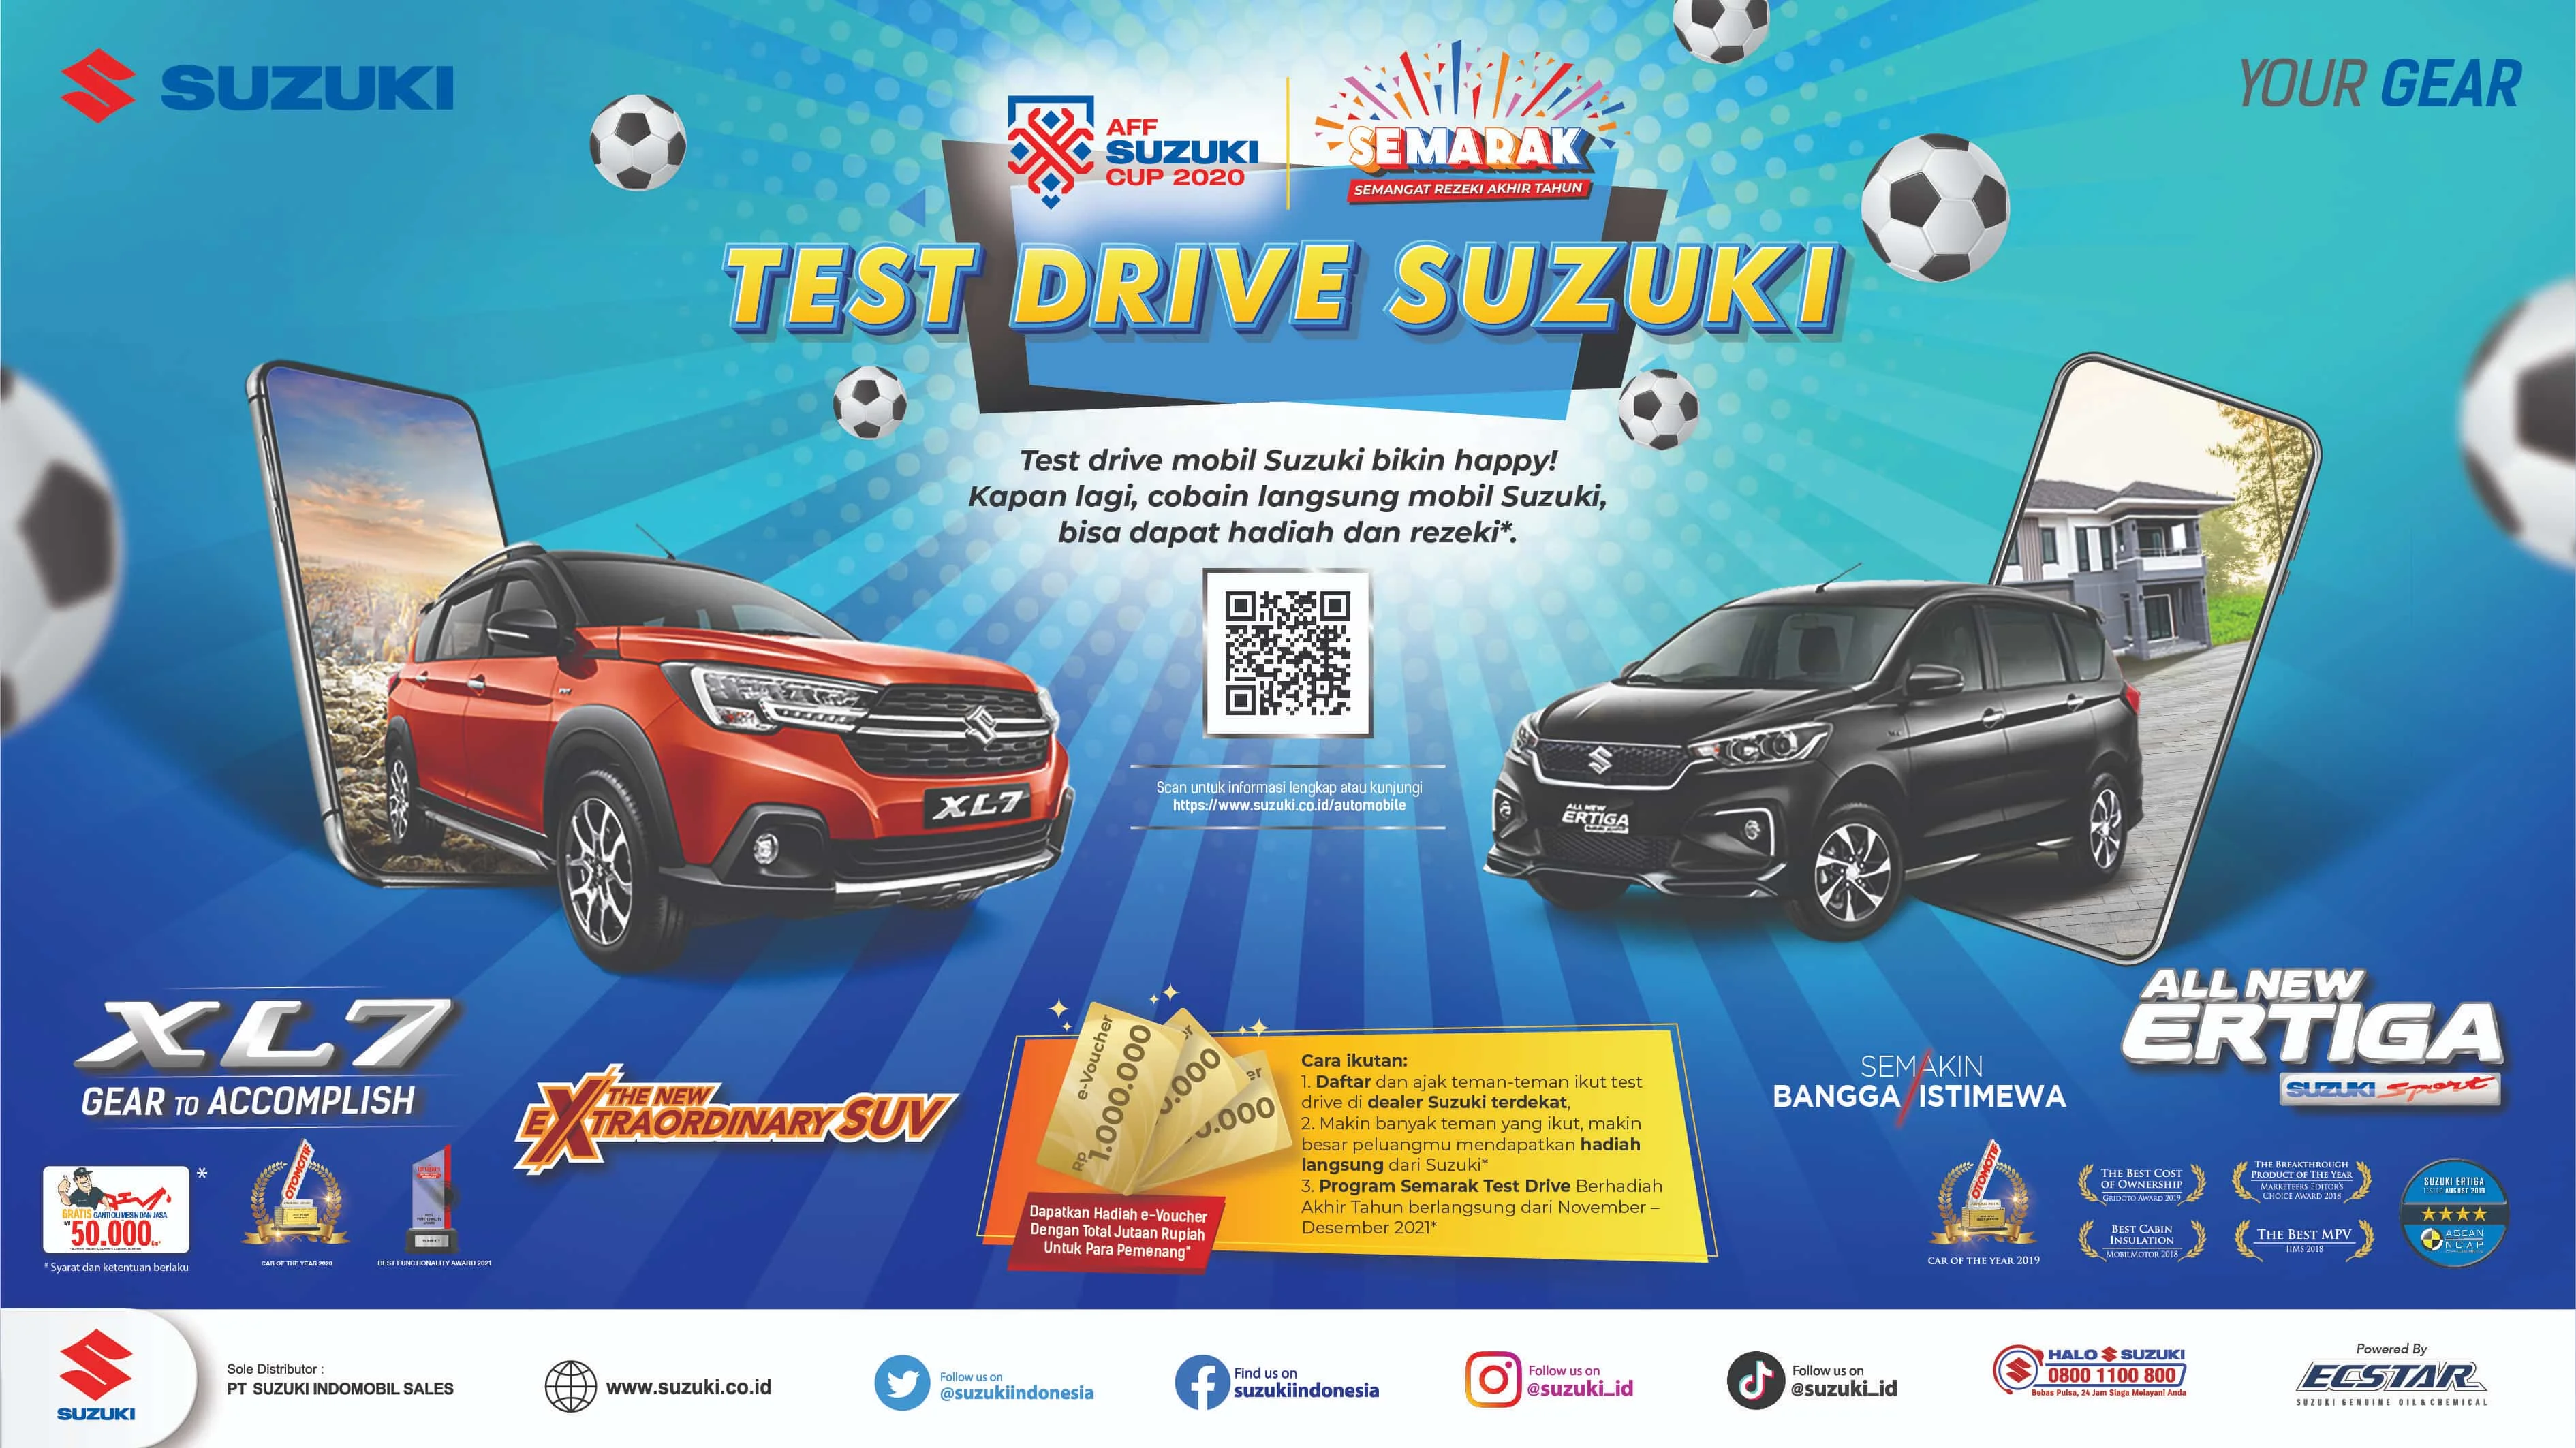 Semarak Test Drive Berhadiah Akhir Tahun Suzuki Tawarkan Hadiah Menarik Untuk Konsumen Test Drive